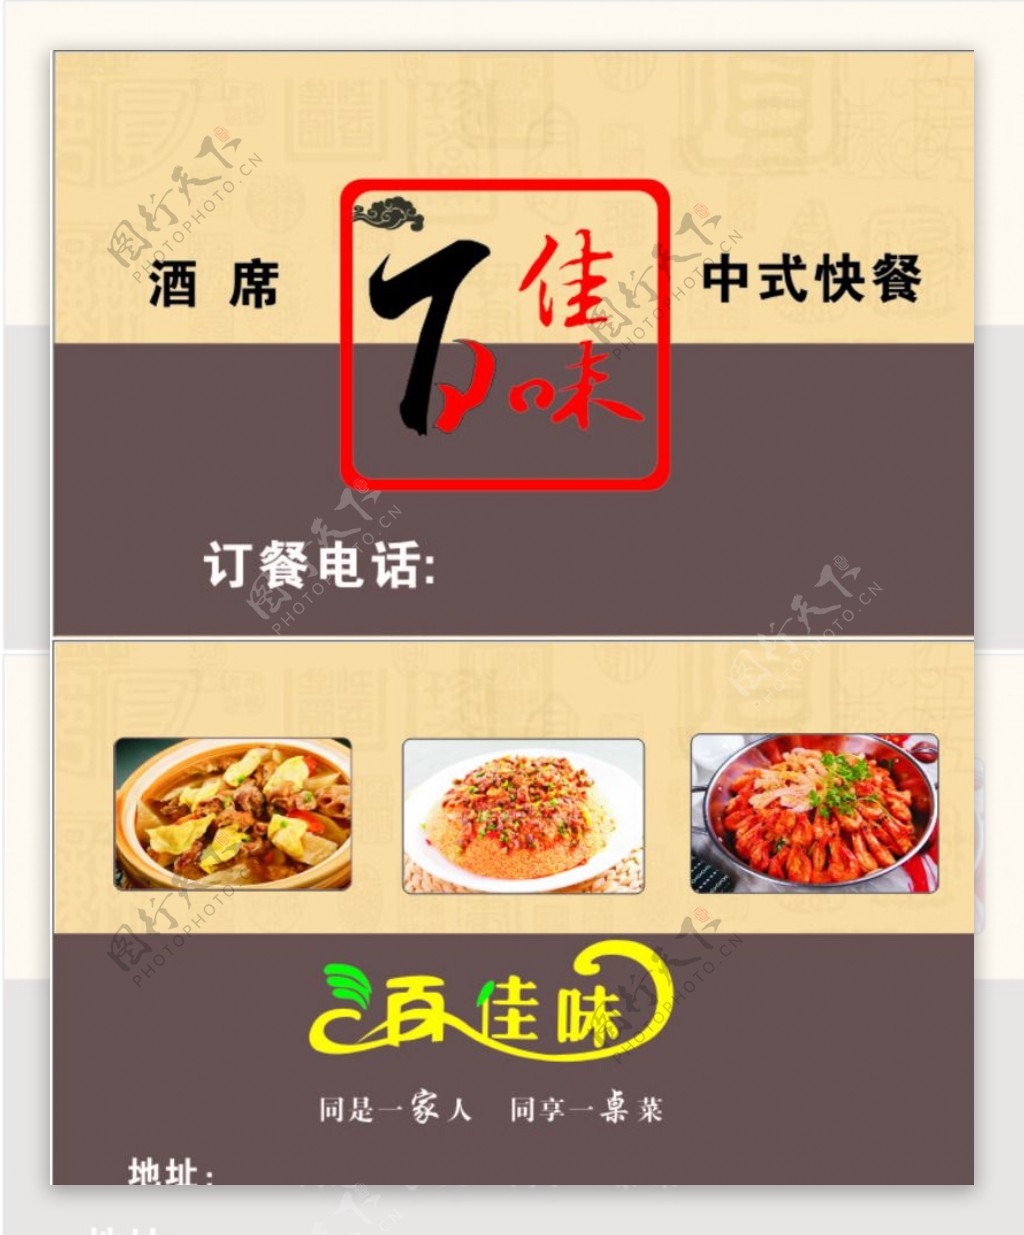 中式快餐名片图片